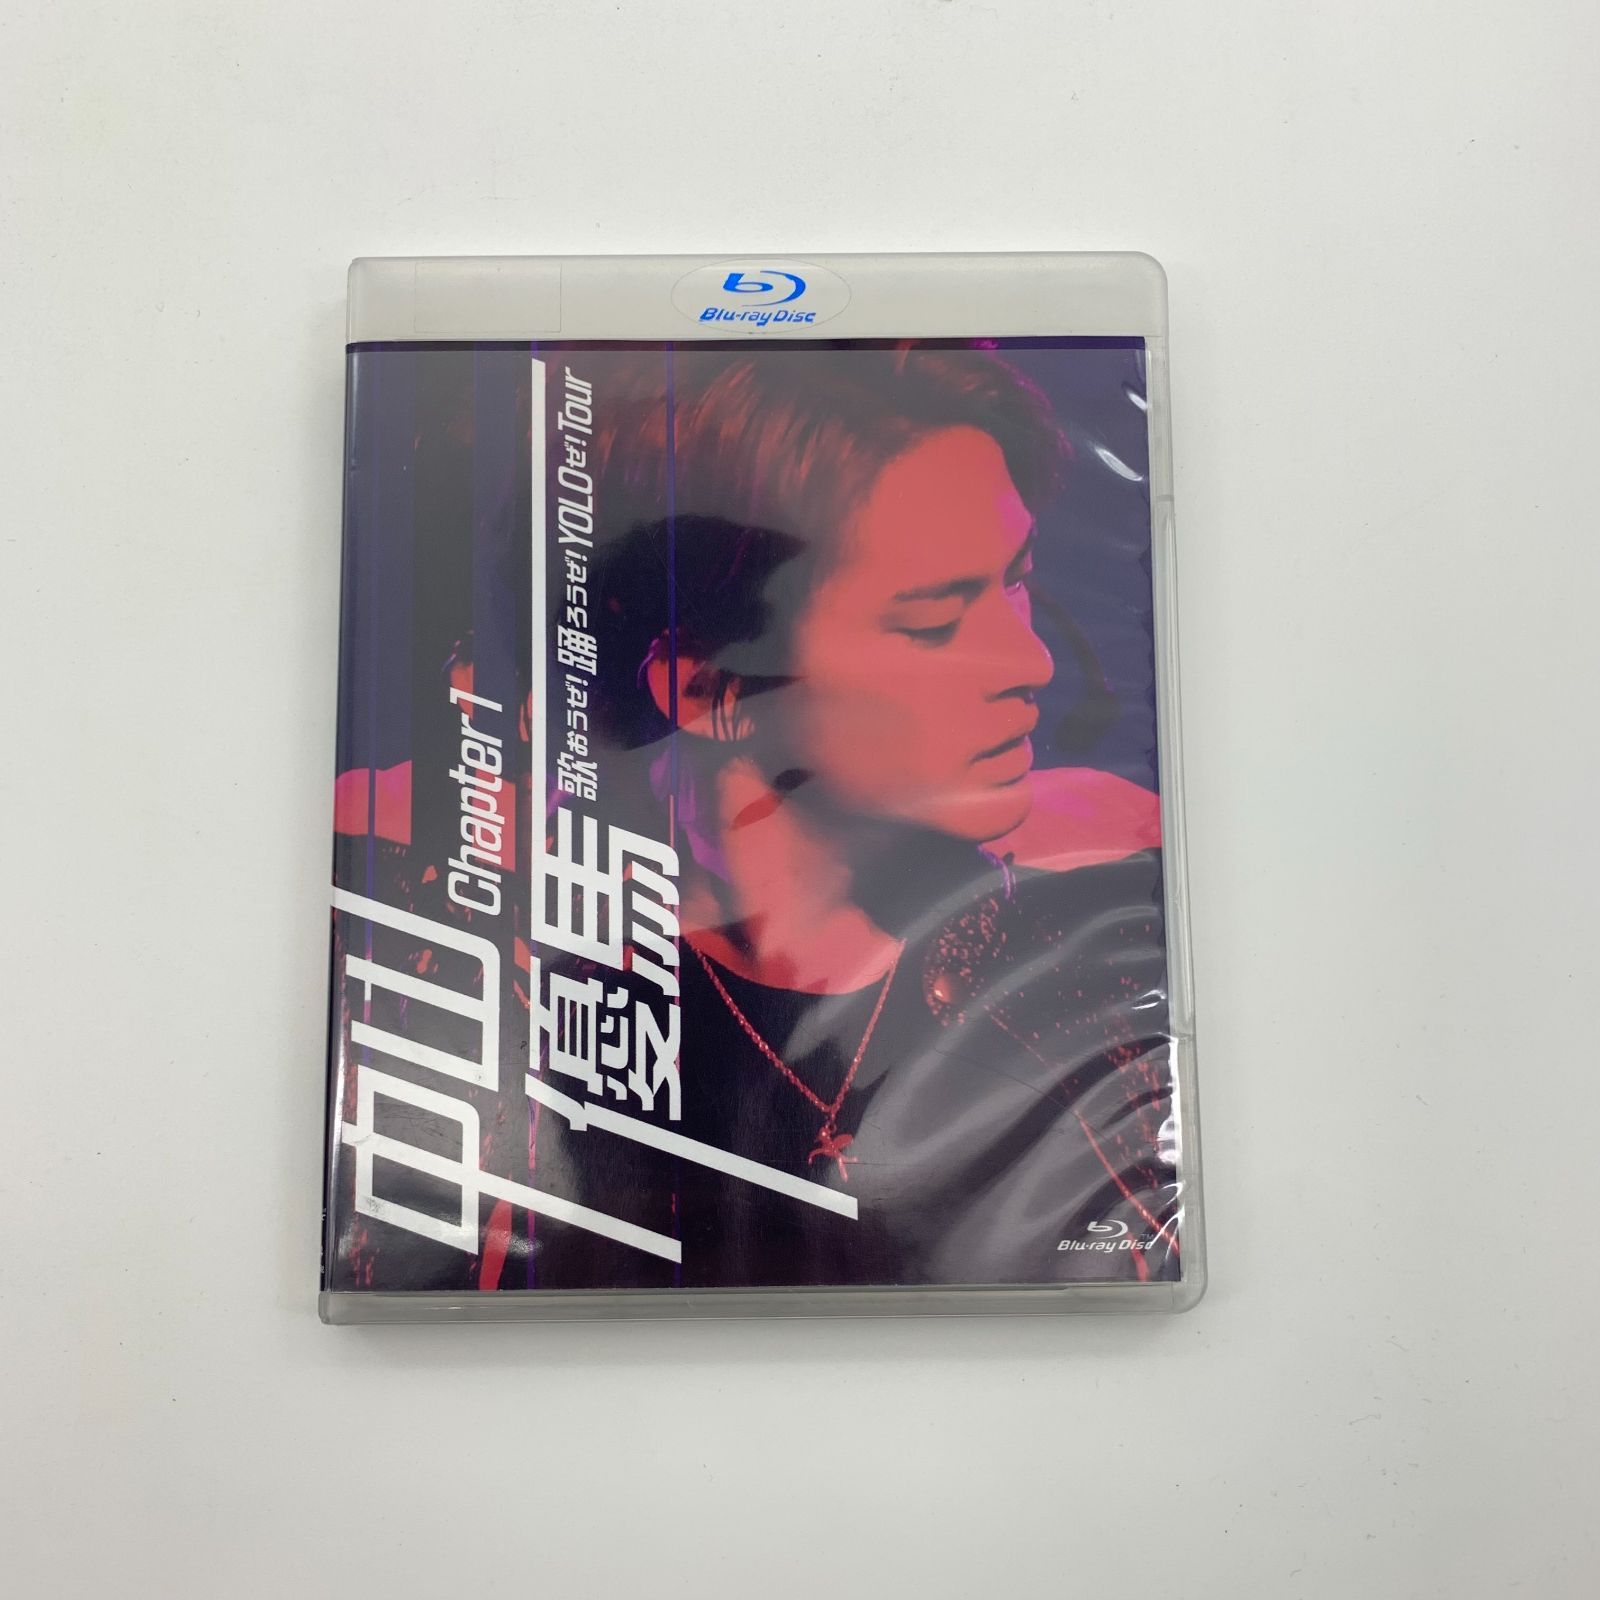 中山優馬chapter1 歌おうぜ踊ろうぜyoloぜtour Blu-ray - DVD/ブルーレイ